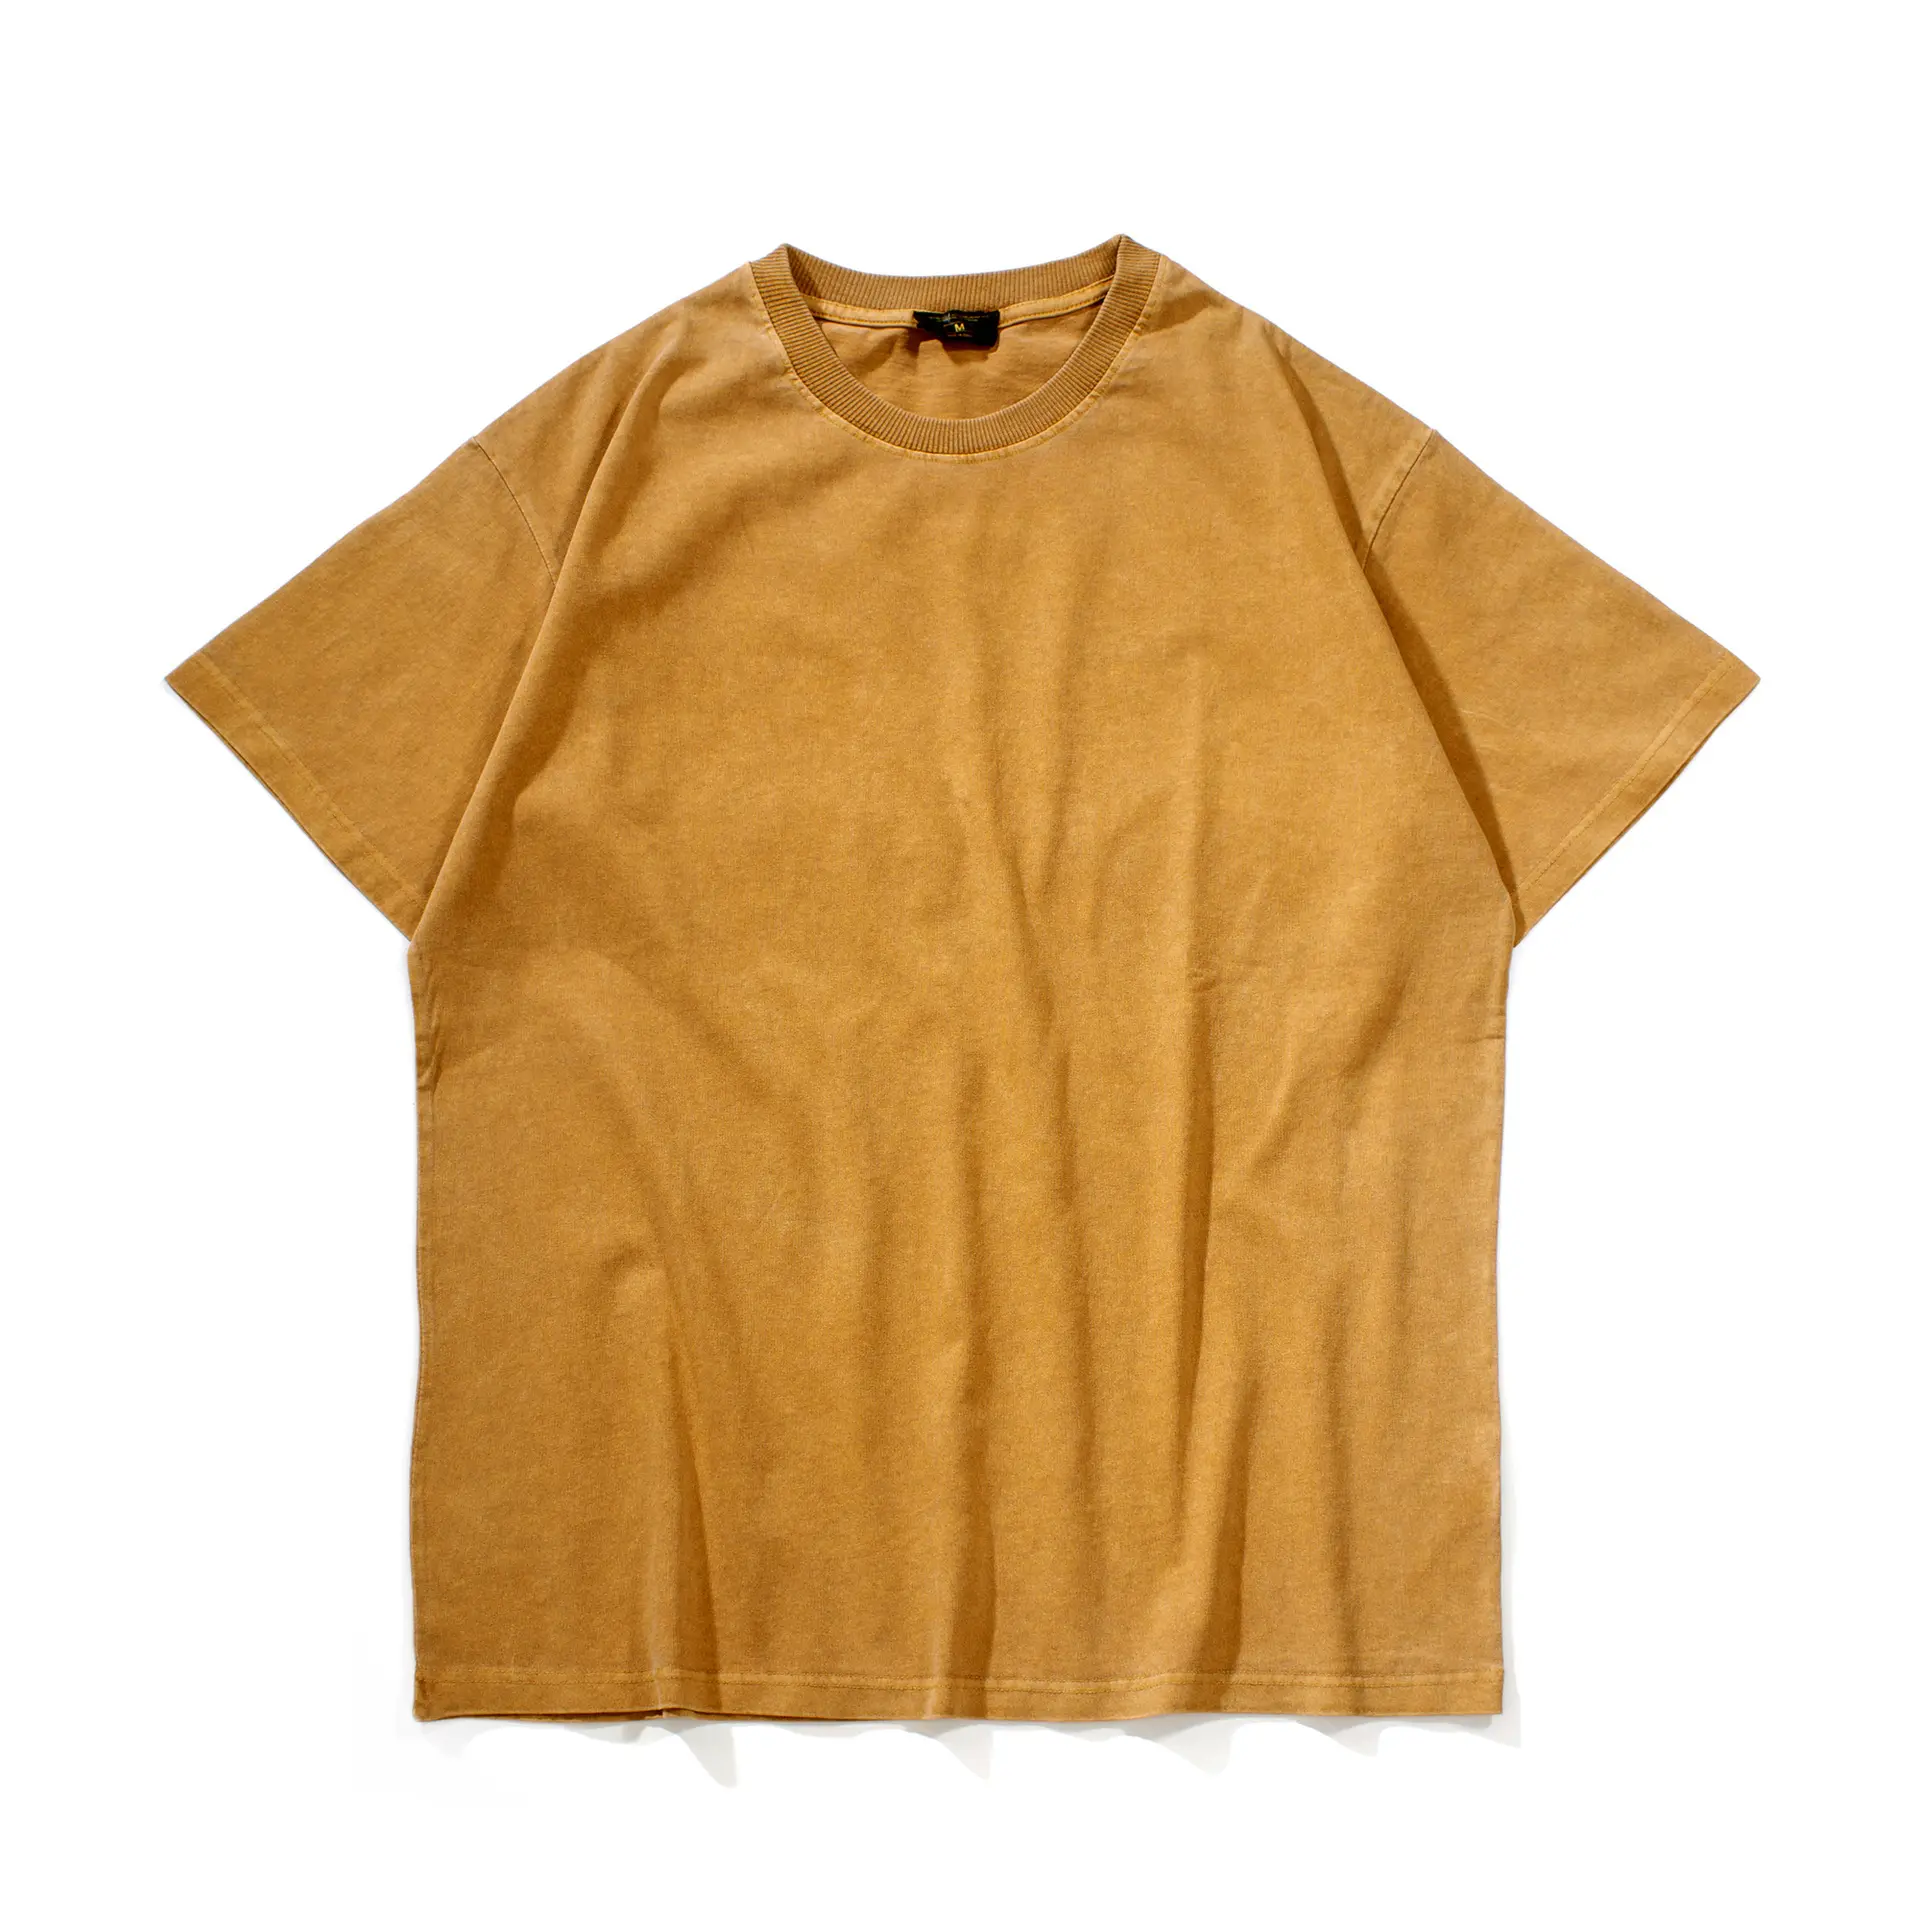 कस्टम मेड उच्च गुणवत्ता वर्णक डाई और भारी विंटेज धोने के टी शर्ट पुरुषों 260gsm